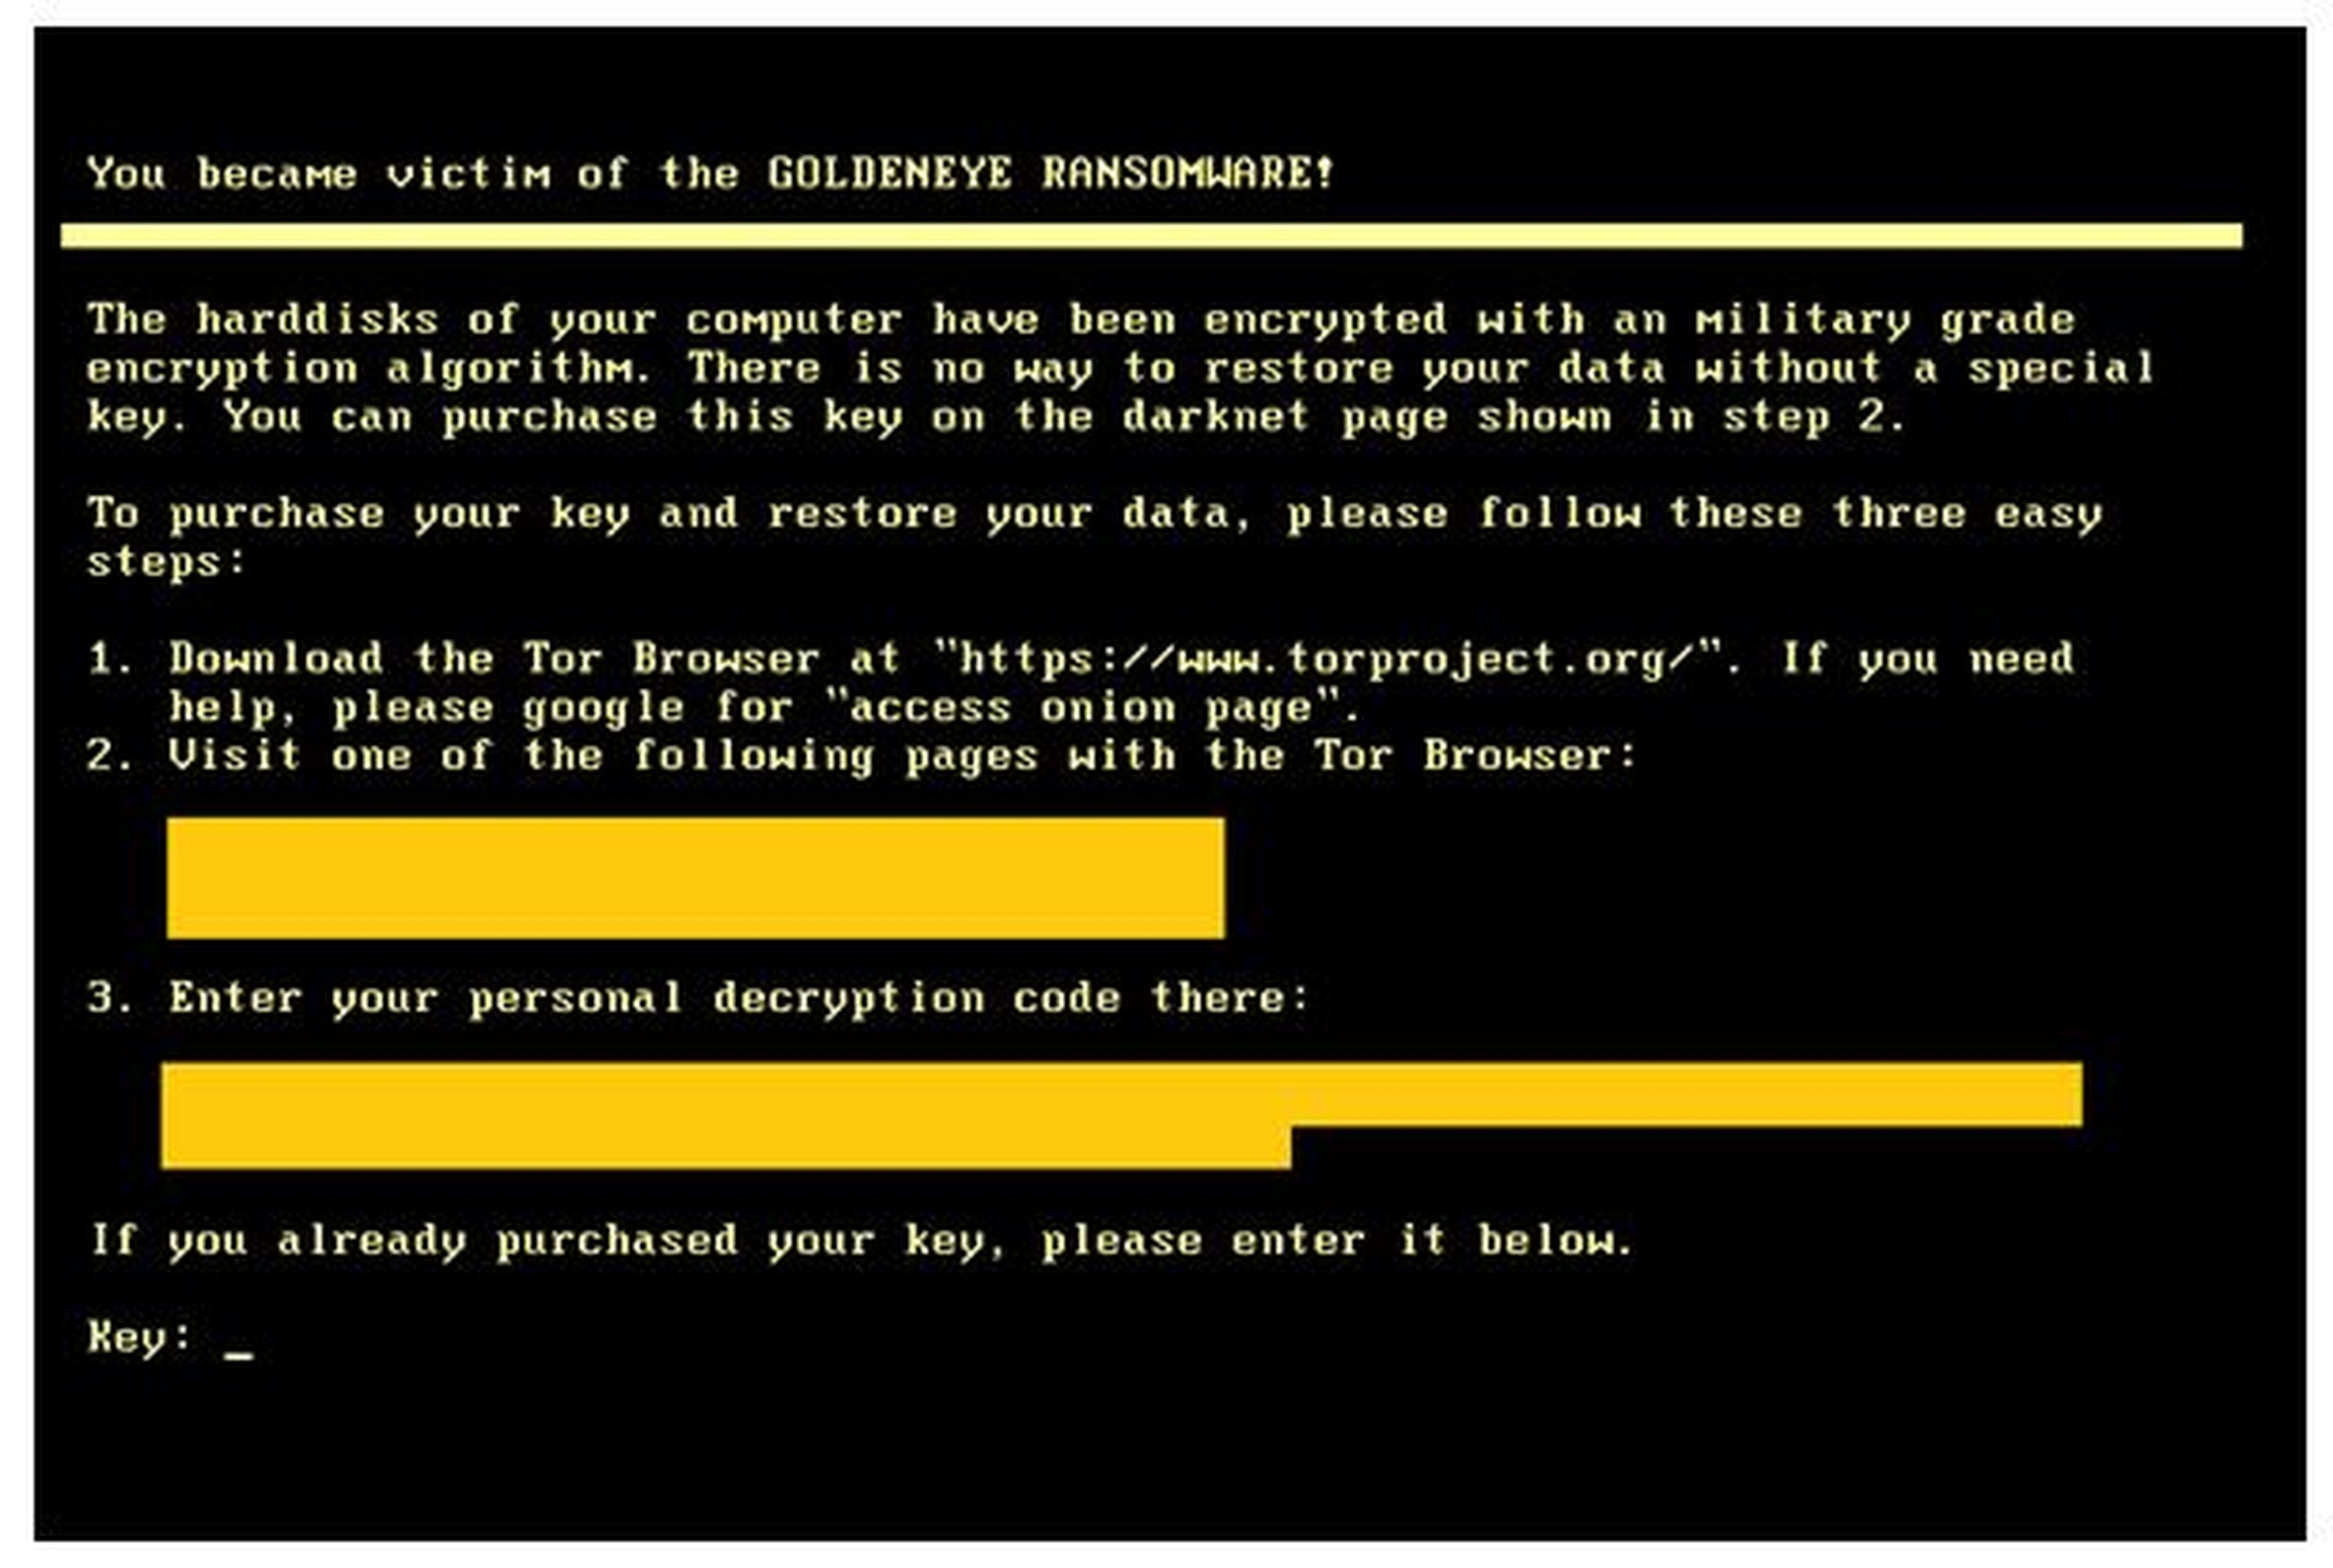 GoldenEye ransomware